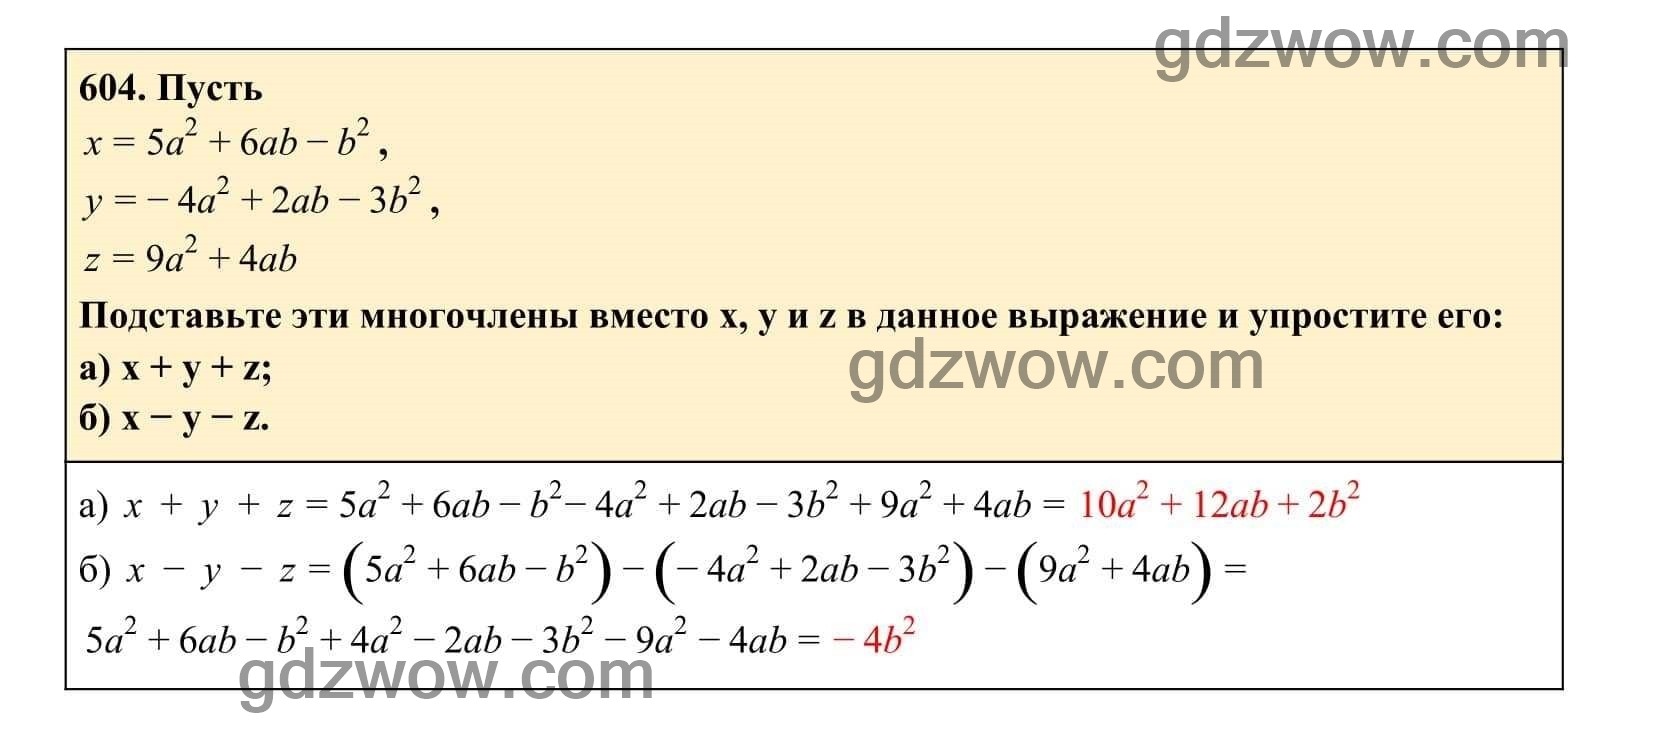 Упражнение 604 - ГДЗ по Алгебре 7 класс Учебник Макарычев (решебник) - GDZwow